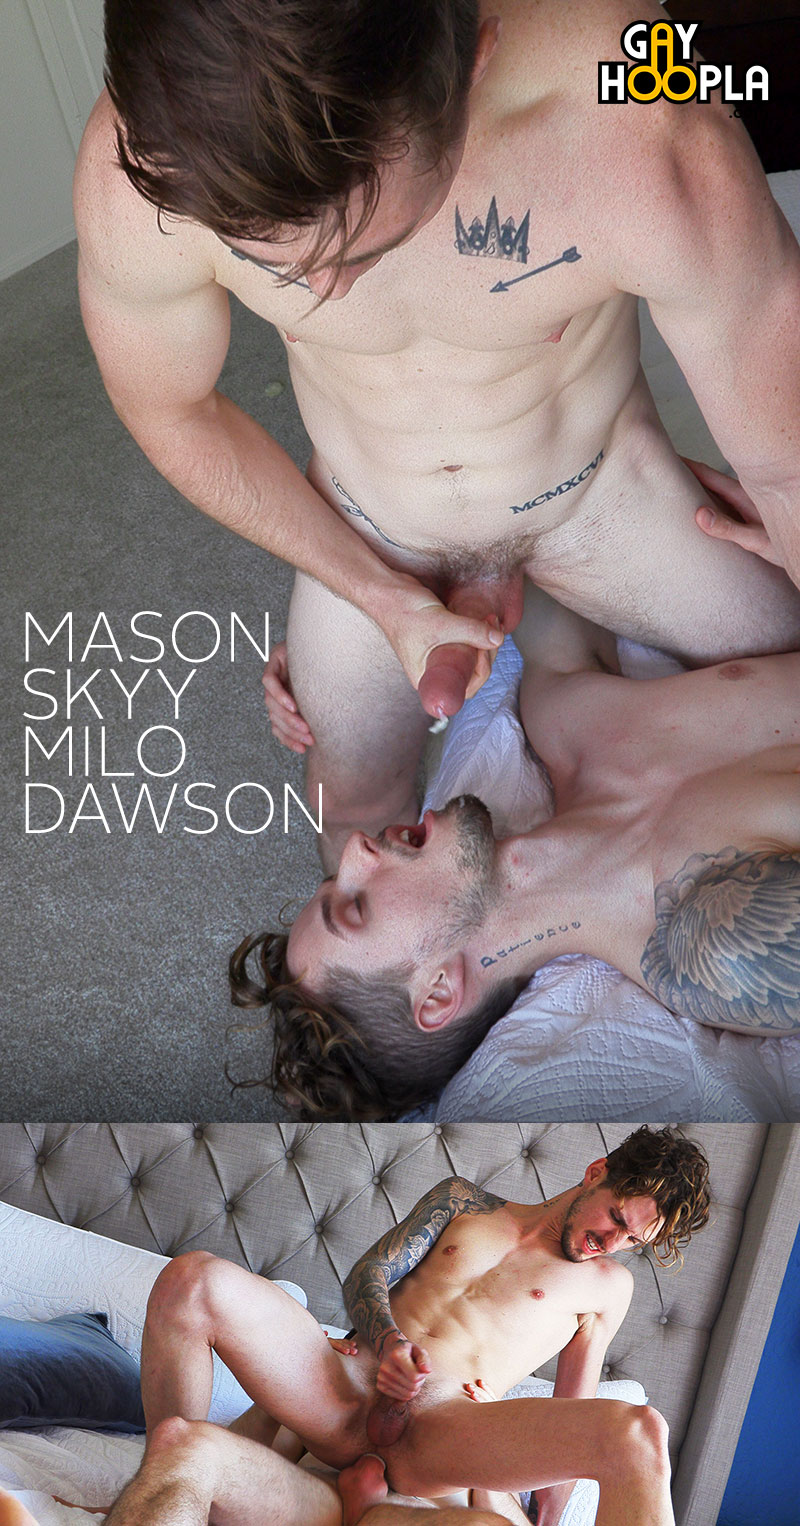 GayHoopla: Mason Skyy fucks newcomer Milo Dawson